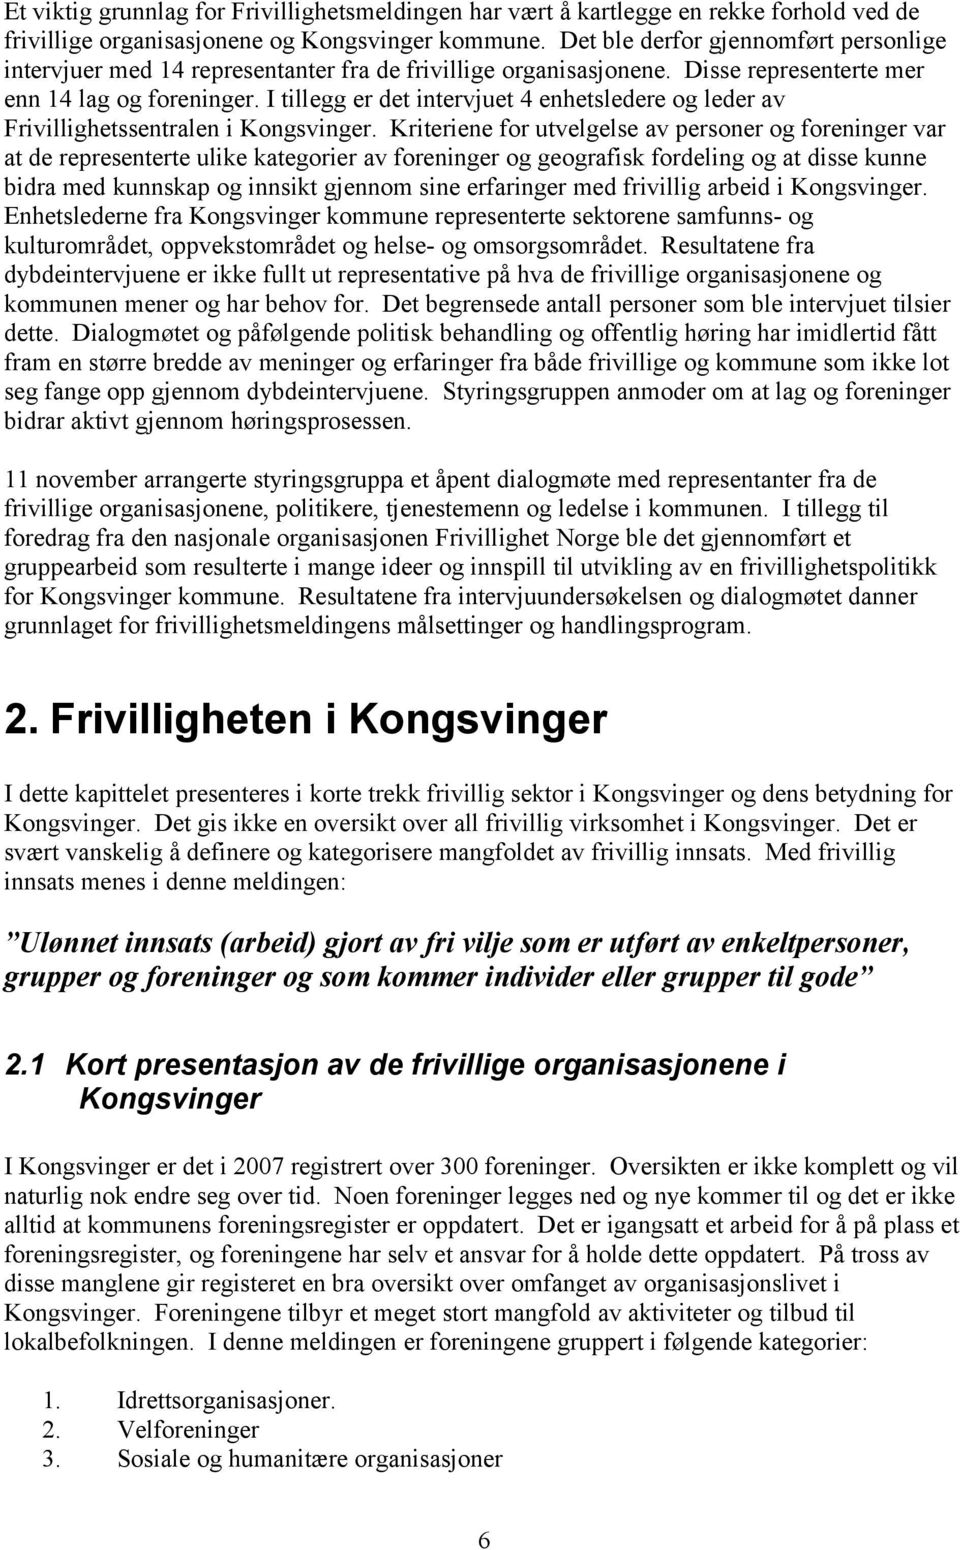 I tillegg er det intervjuet 4 enhetsledere og leder av Frivillighetssentralen i Kongsvinger.